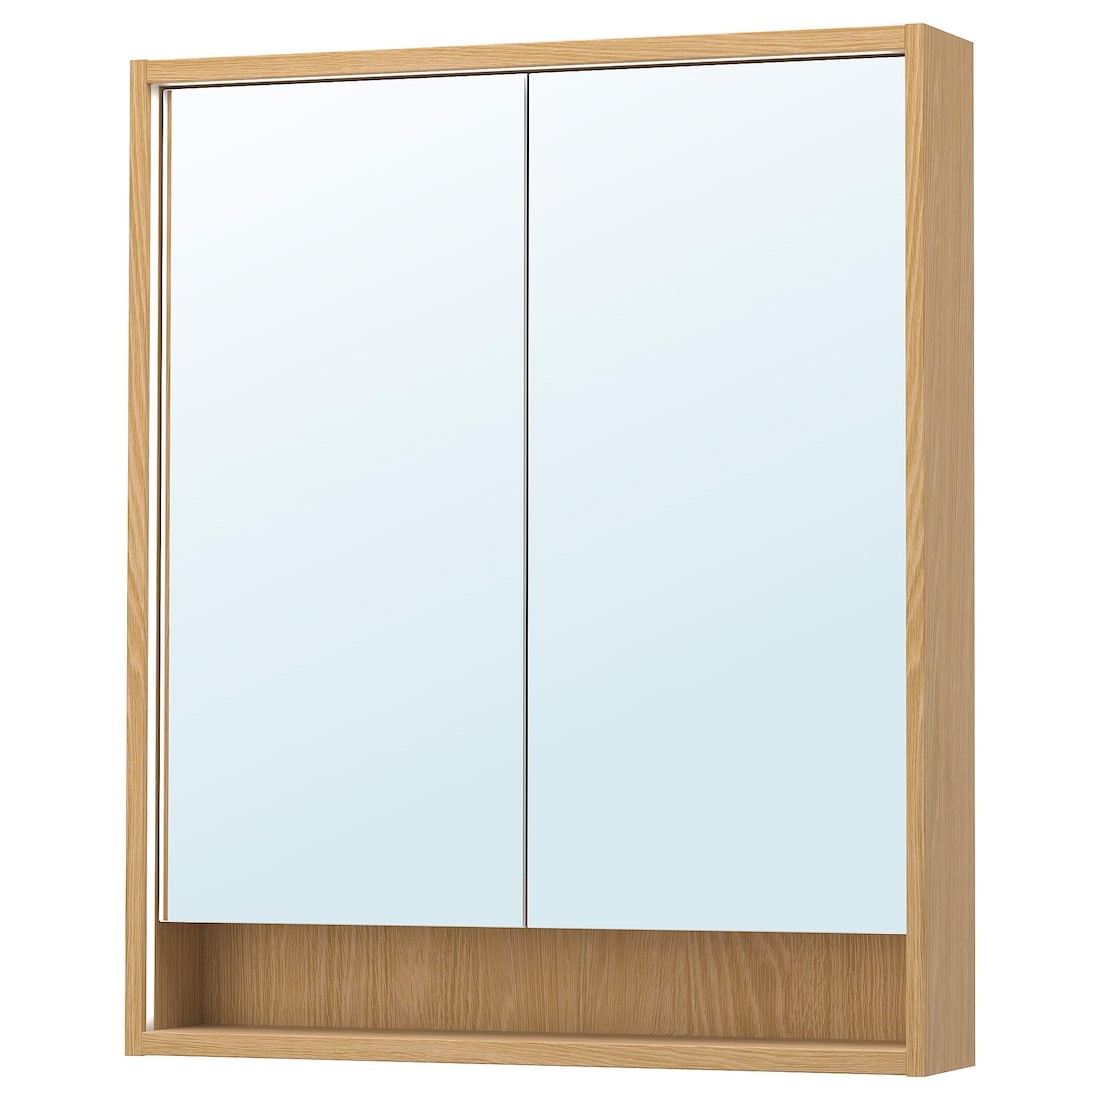 FAXÄLVEN Зеркальный шкаф со встроенной подсветкой, имитация дуба, 80x15x95 см